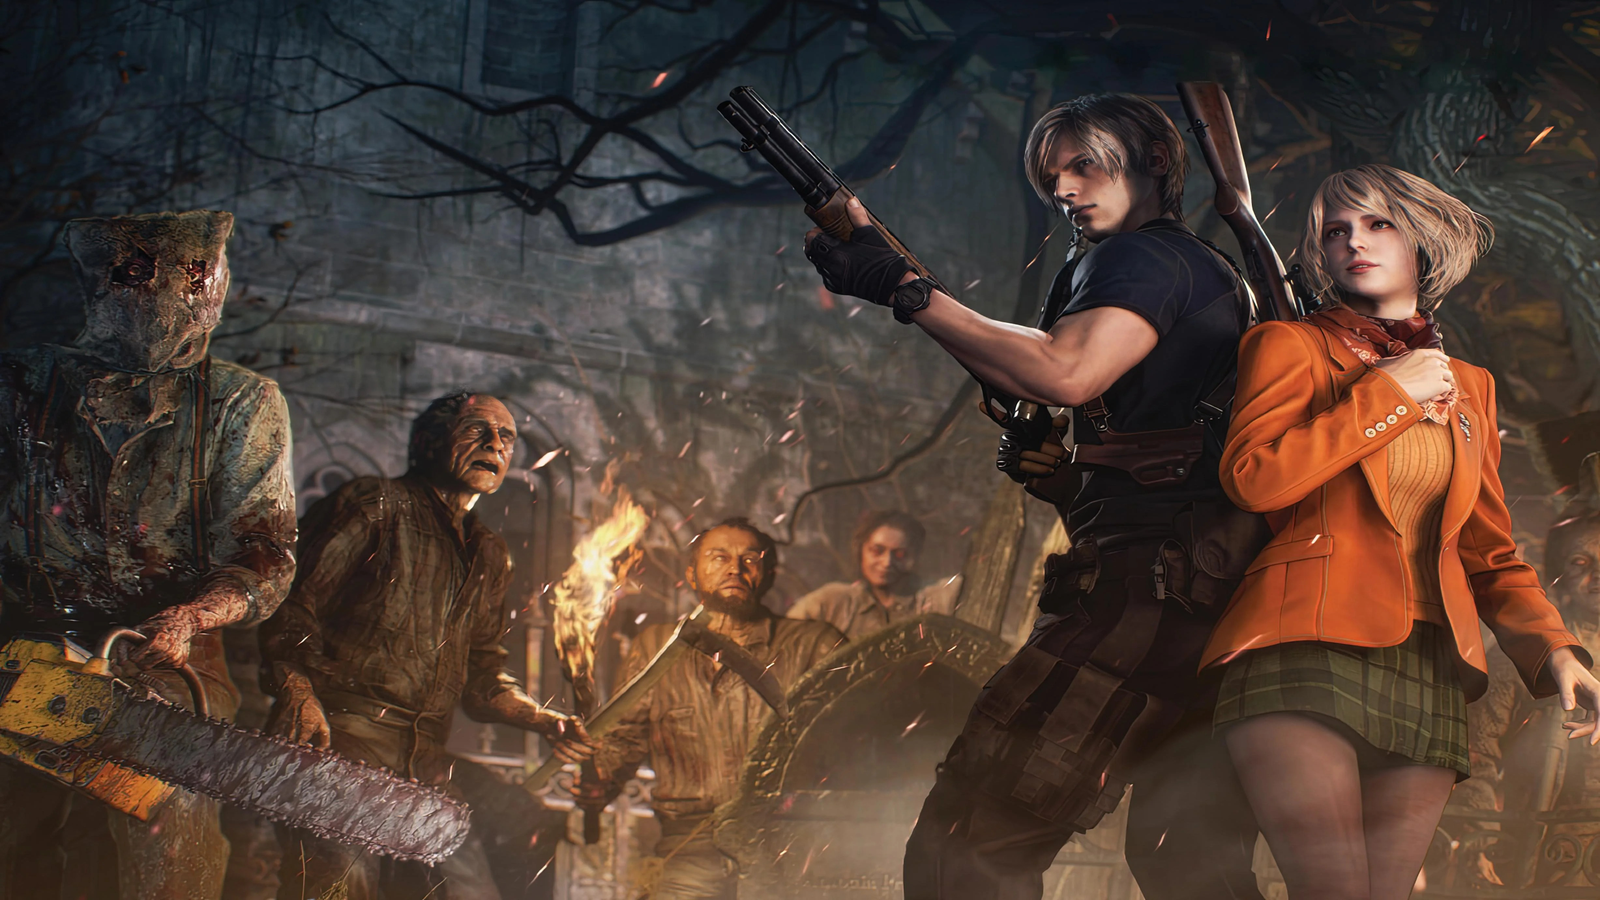  Resident Evil 4 - Xbox Series X : Capcom U S A Inc: Everything  Else